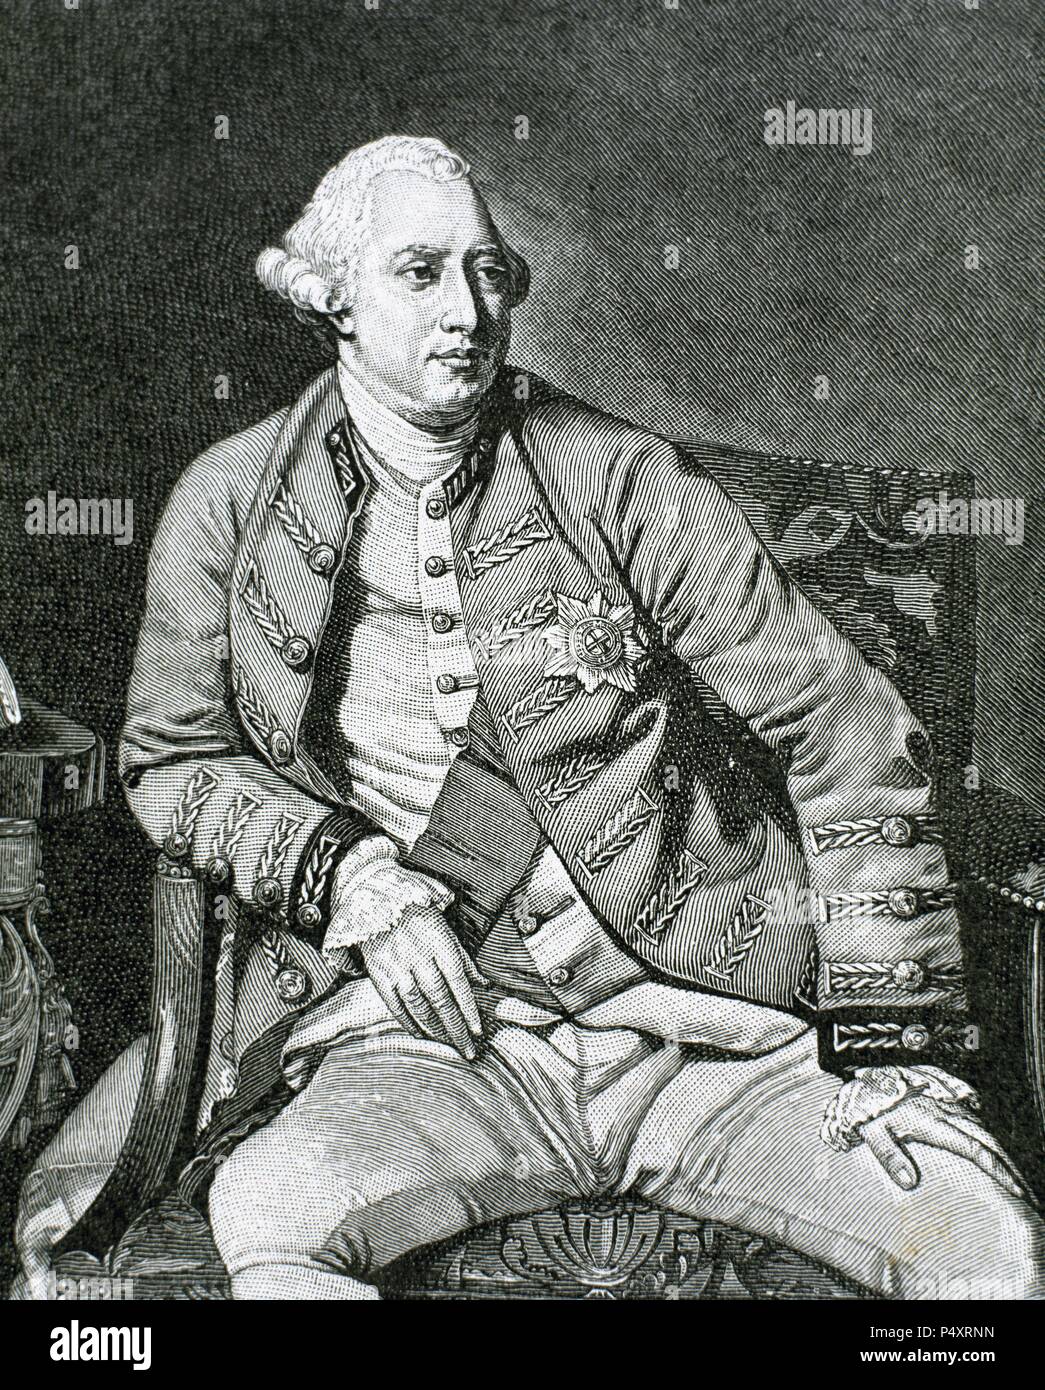 George III (London, 1738 - Windsor, 1820). König von Großbritannien und Irland (1760-1820), Kurfürst (1760-1814) und König von Hannover (1814-1820), Enkel und Nachfolger von Georg II. Gravur. Stockfoto